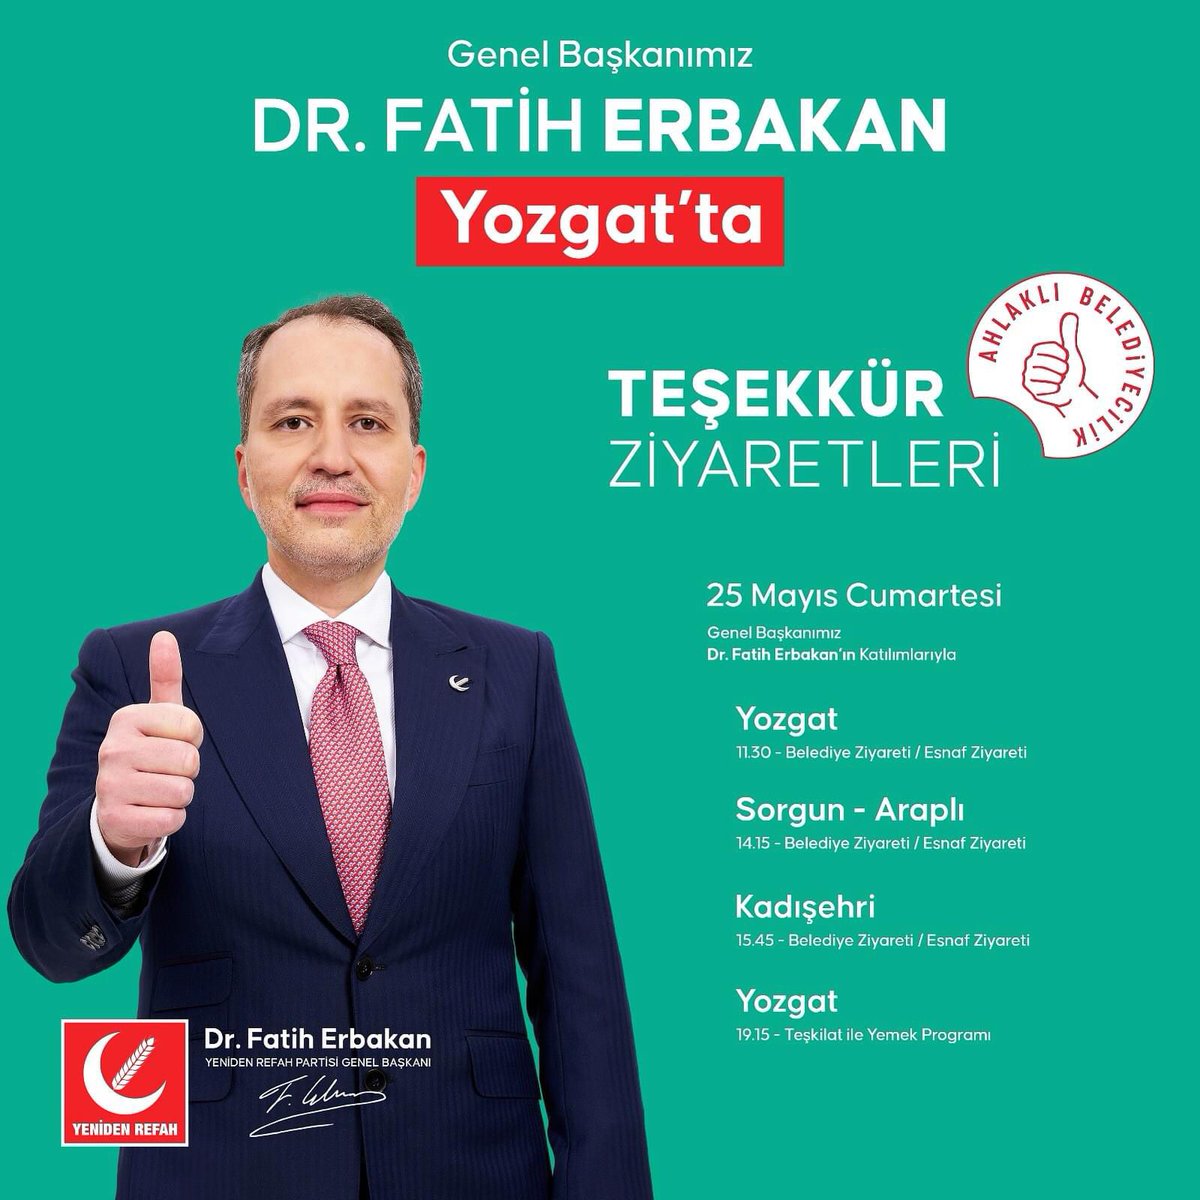 Yeniden Refah Partisi Genel Başkanımız sayın Dr. Fatih ERBAKAN, 25 Mayıs Cumartesi günü Yozgat’a yapacağı teşekkür ziyareti kapsamında ilk olarak saat 11:30’da Belediye Başkanımız sayın Dr. Kazım ARSLAN’ı ziyaret edip, devamında esnaf ziyareti gerçekleştirecektir.